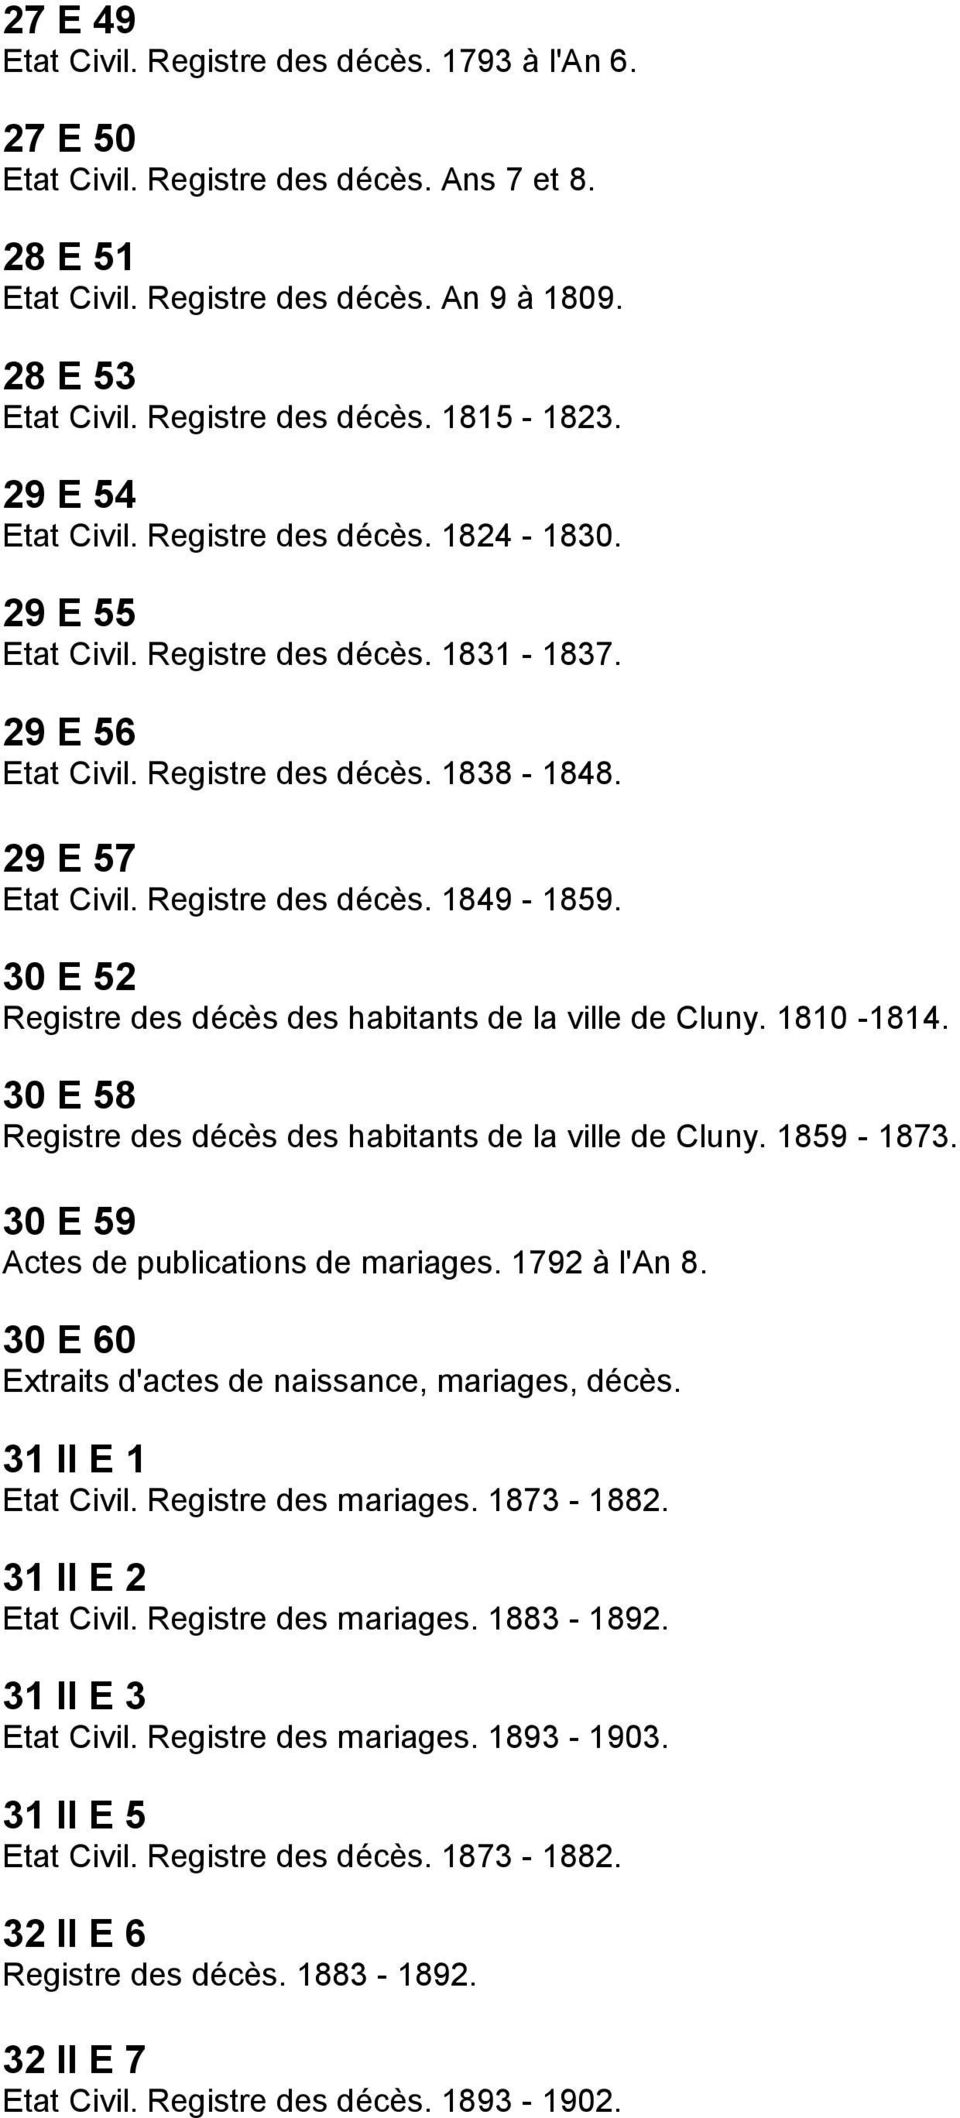 30 E 52 Registre des décès des habitants de la ville de Cluny. 1810-1814. 30 E 58 Registre des décès des habitants de la ville de Cluny. 1859-1873. 30 E 59 Actes de publications de mariages.